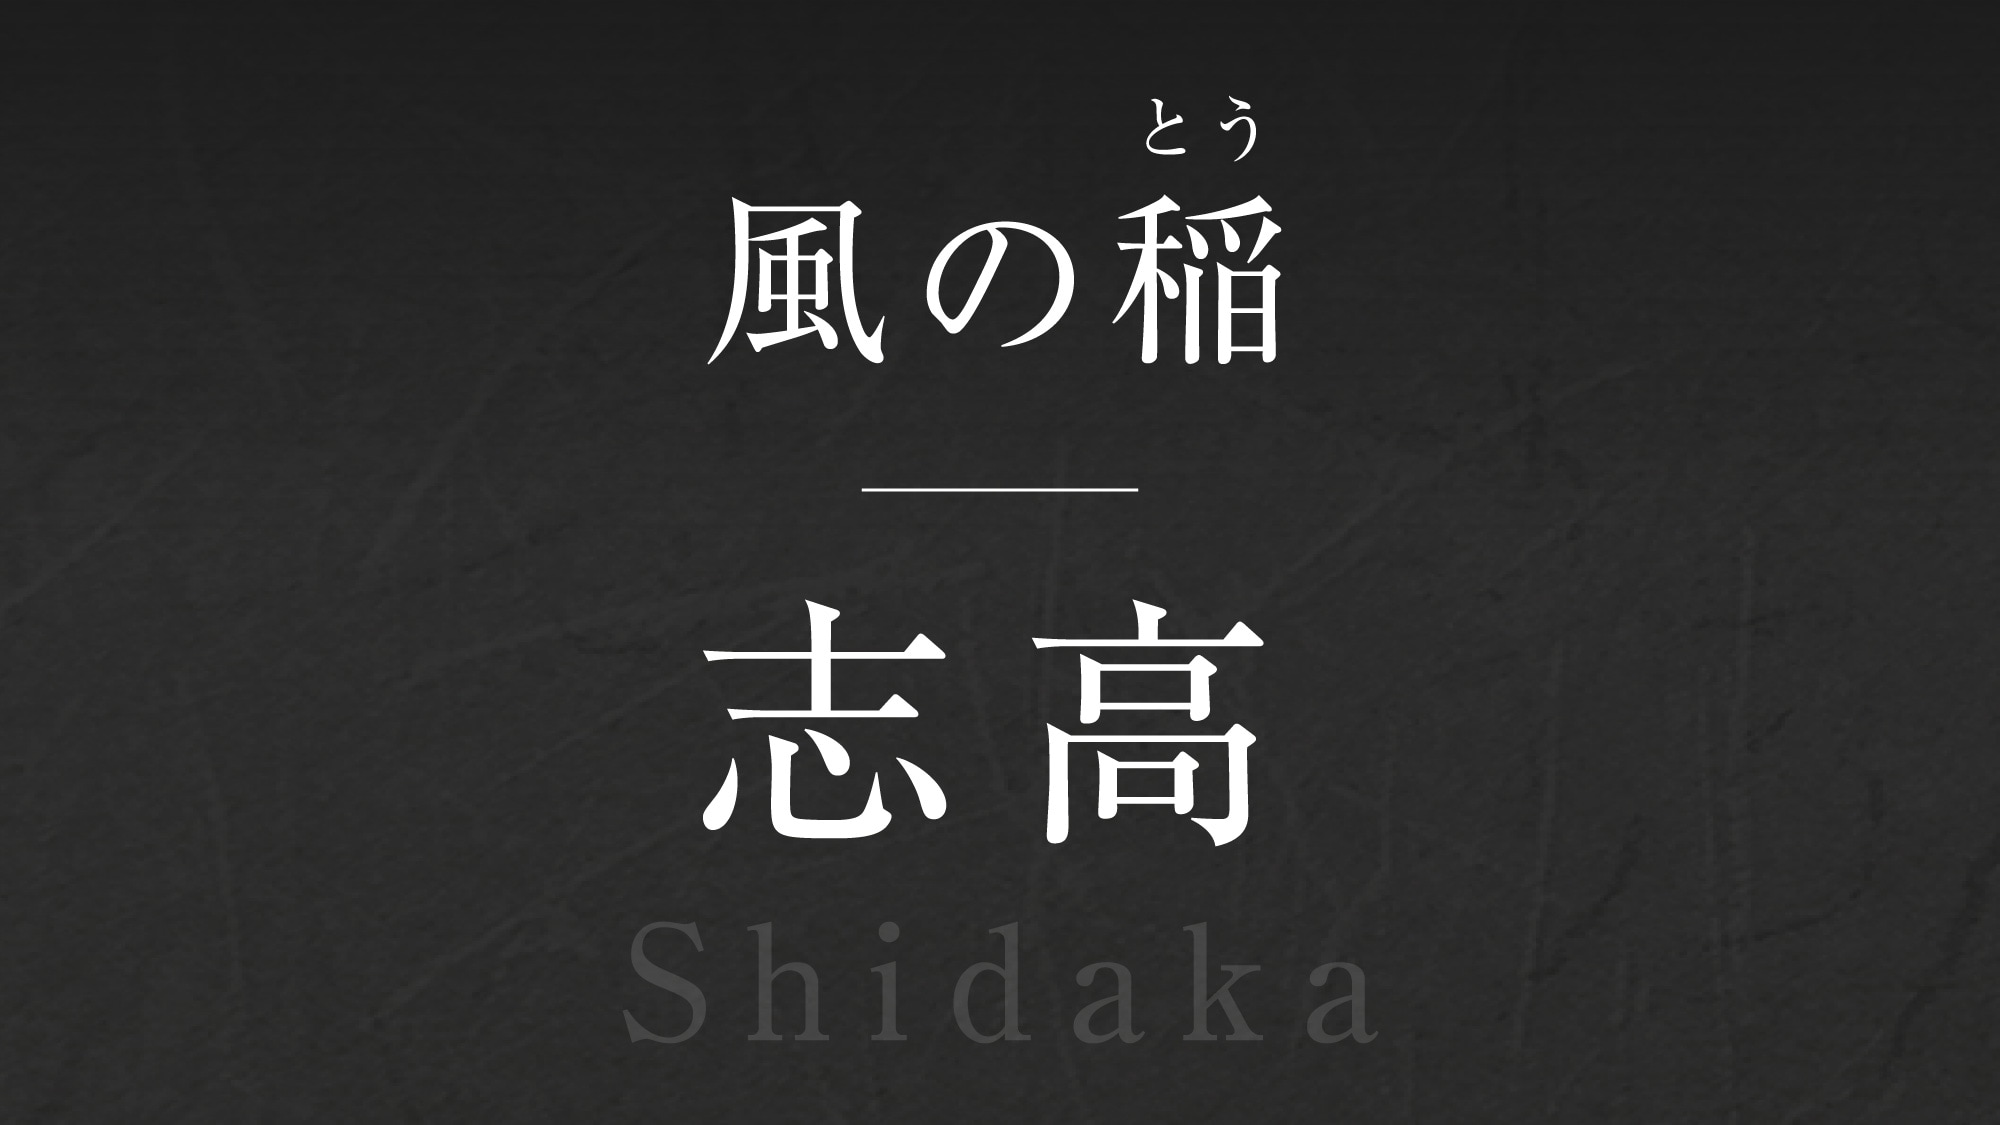 바람의 벼【시다카】-Shidaka-